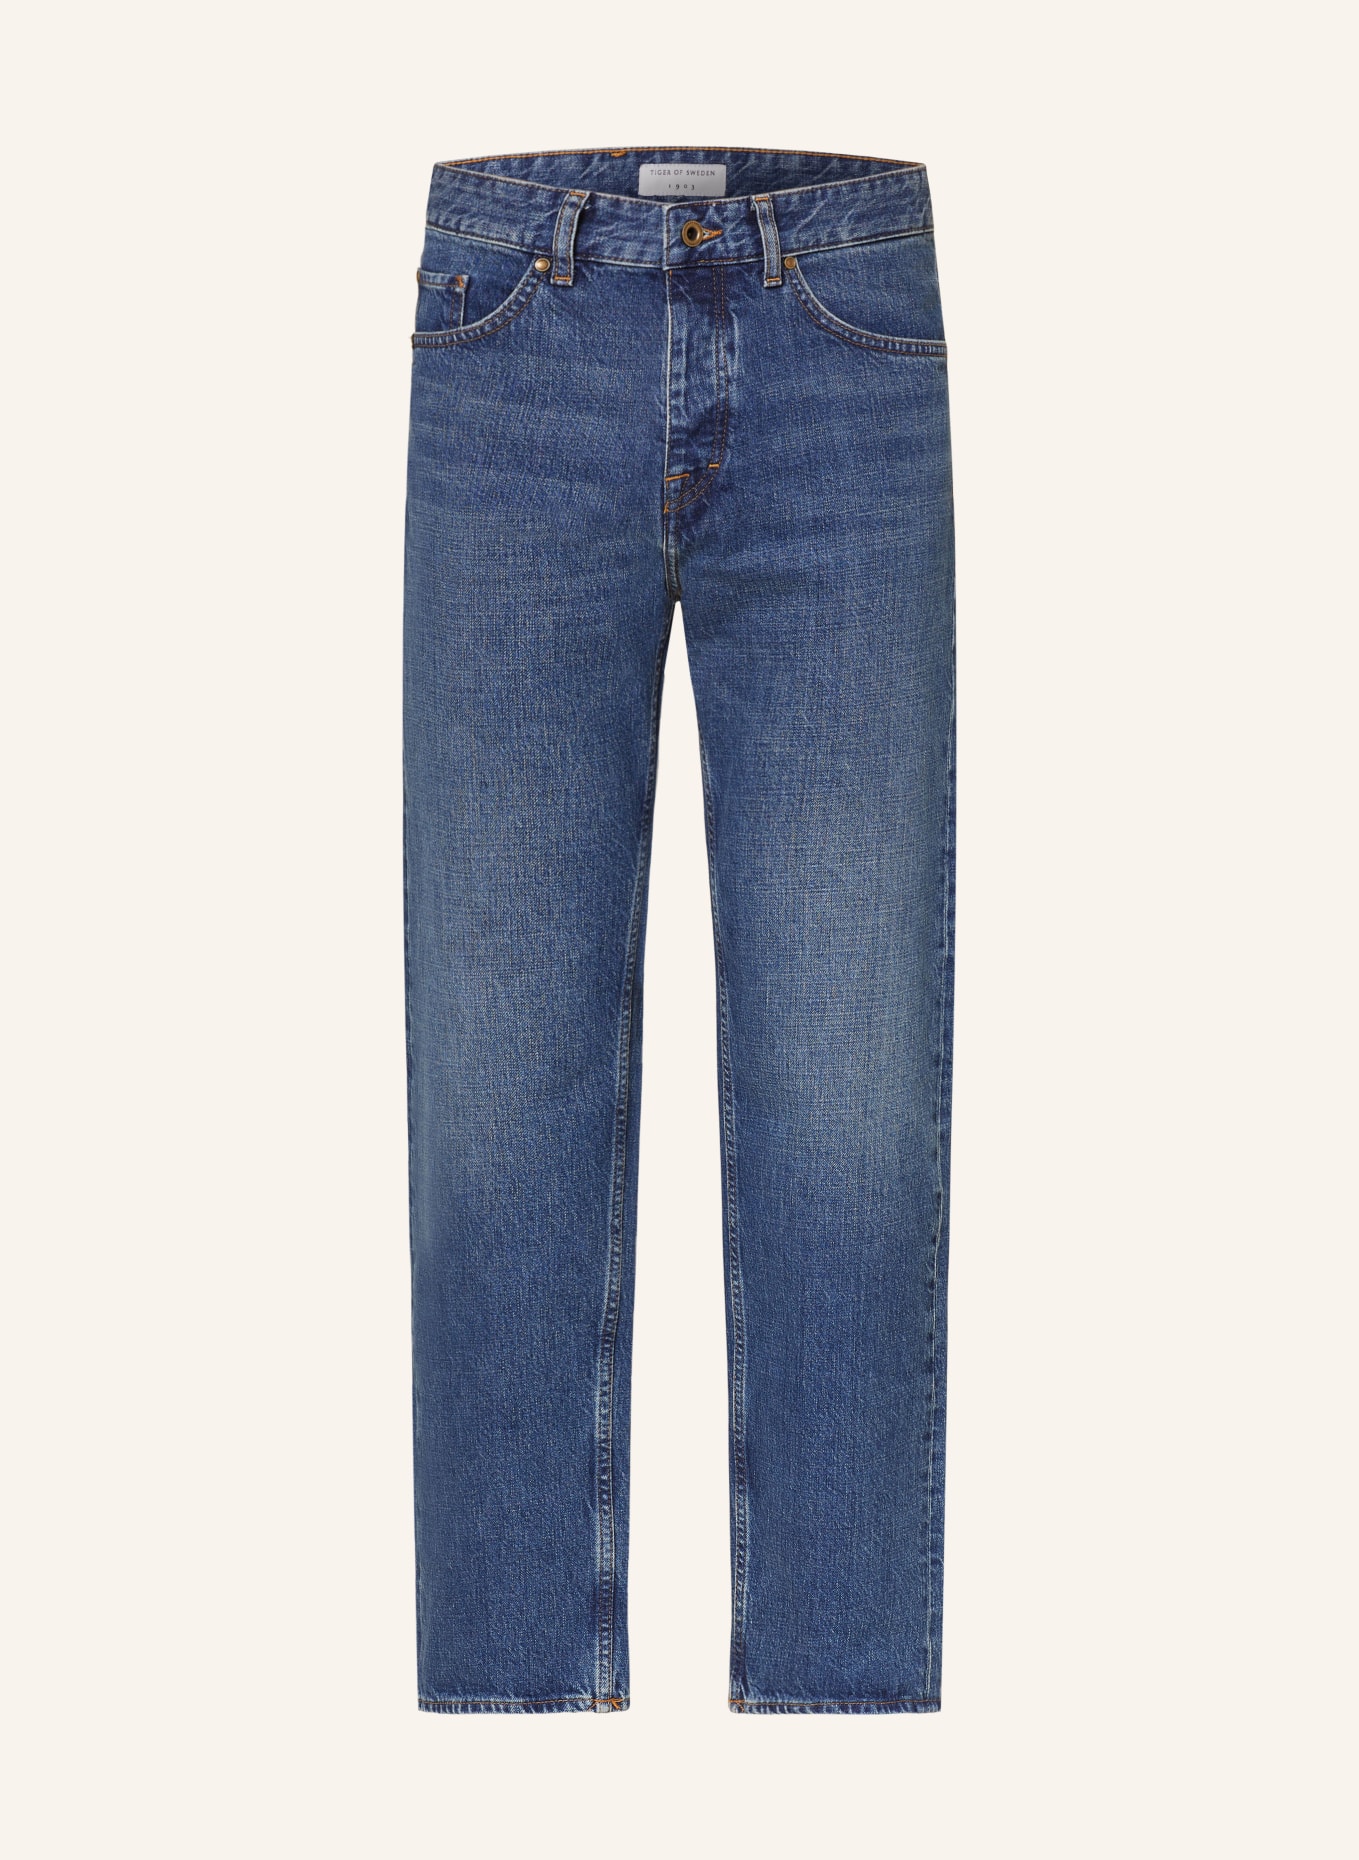 TIGER OF SWEDEN Jeans ALEC slim fit, Color: 209 midnight blue (Image 1)